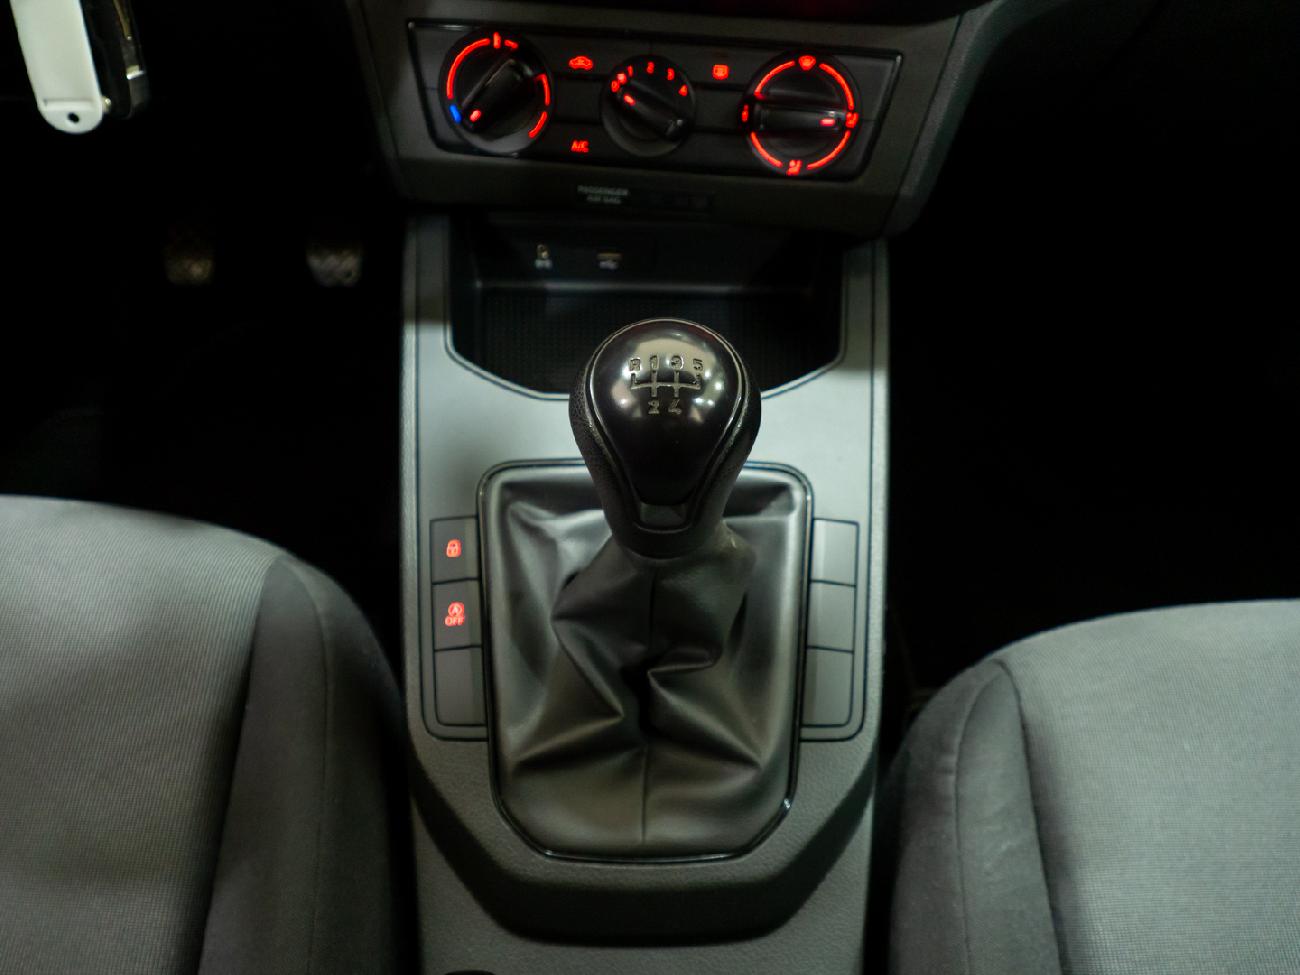 2018 Seat Ibiza Ibiza 1.6 TDI 70kW (95CV) Reference Plus coche de segunda mano